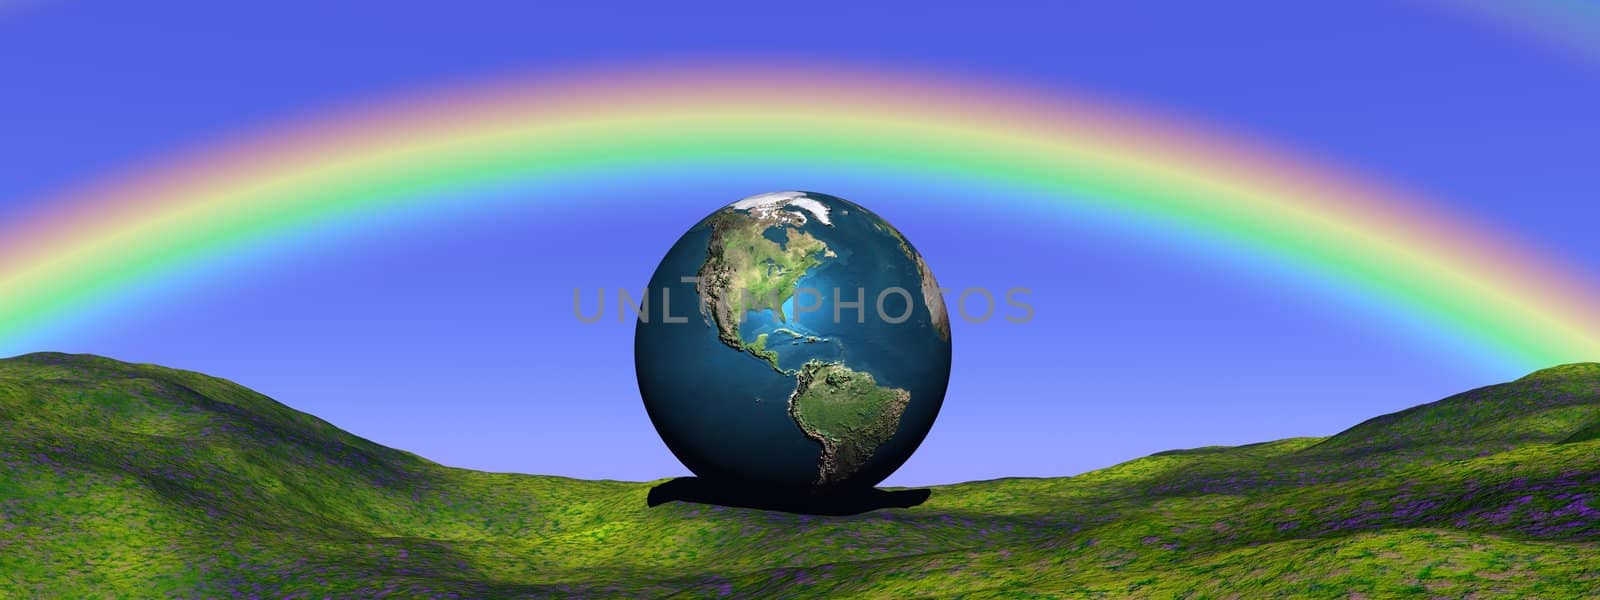 Earth under rainbow by Elenaphotos21